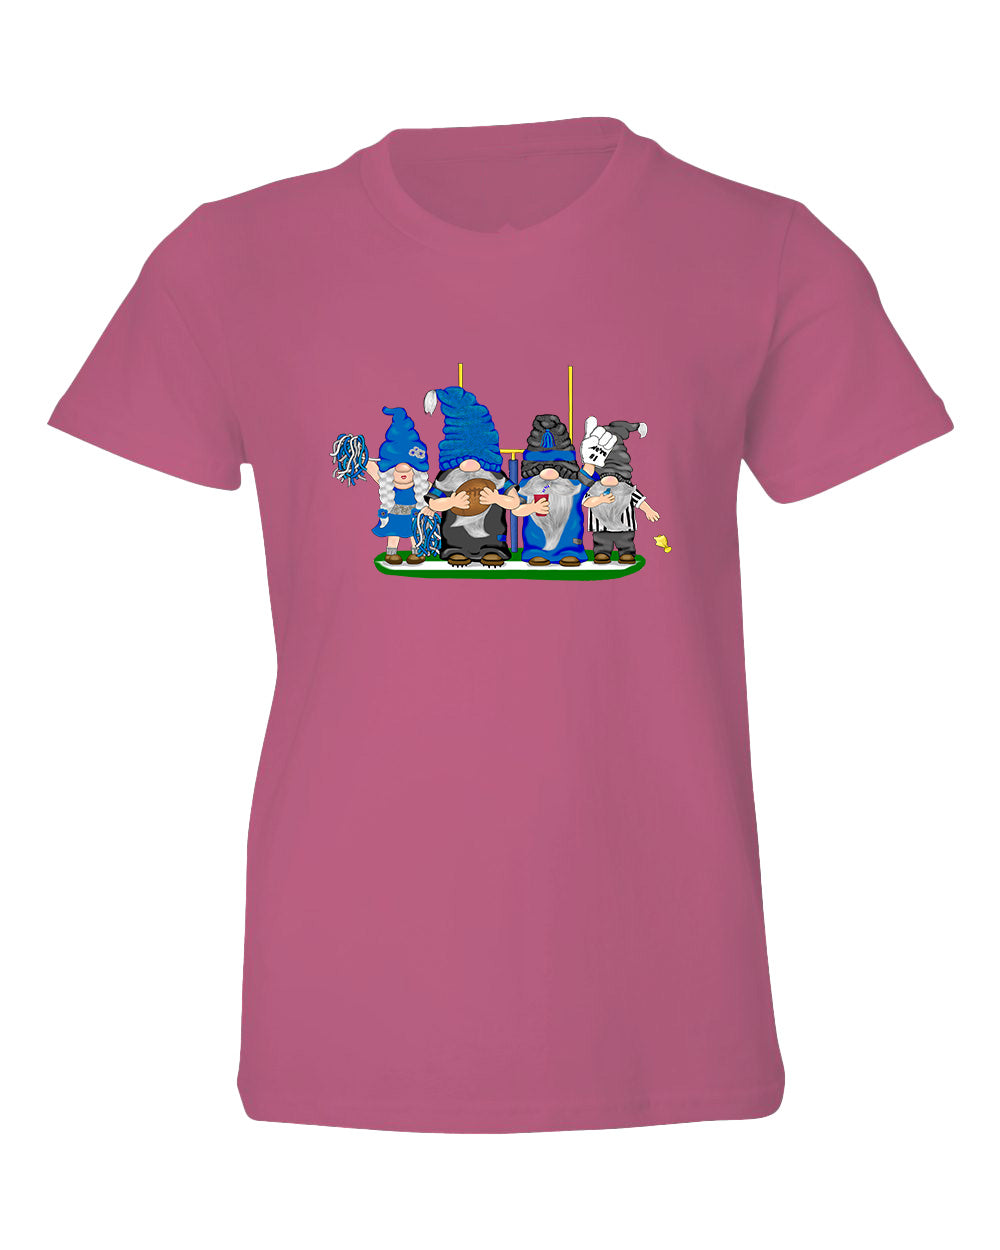 Blue & Black Football Gnomes  (similar to Carolina) on Kids T-shirt